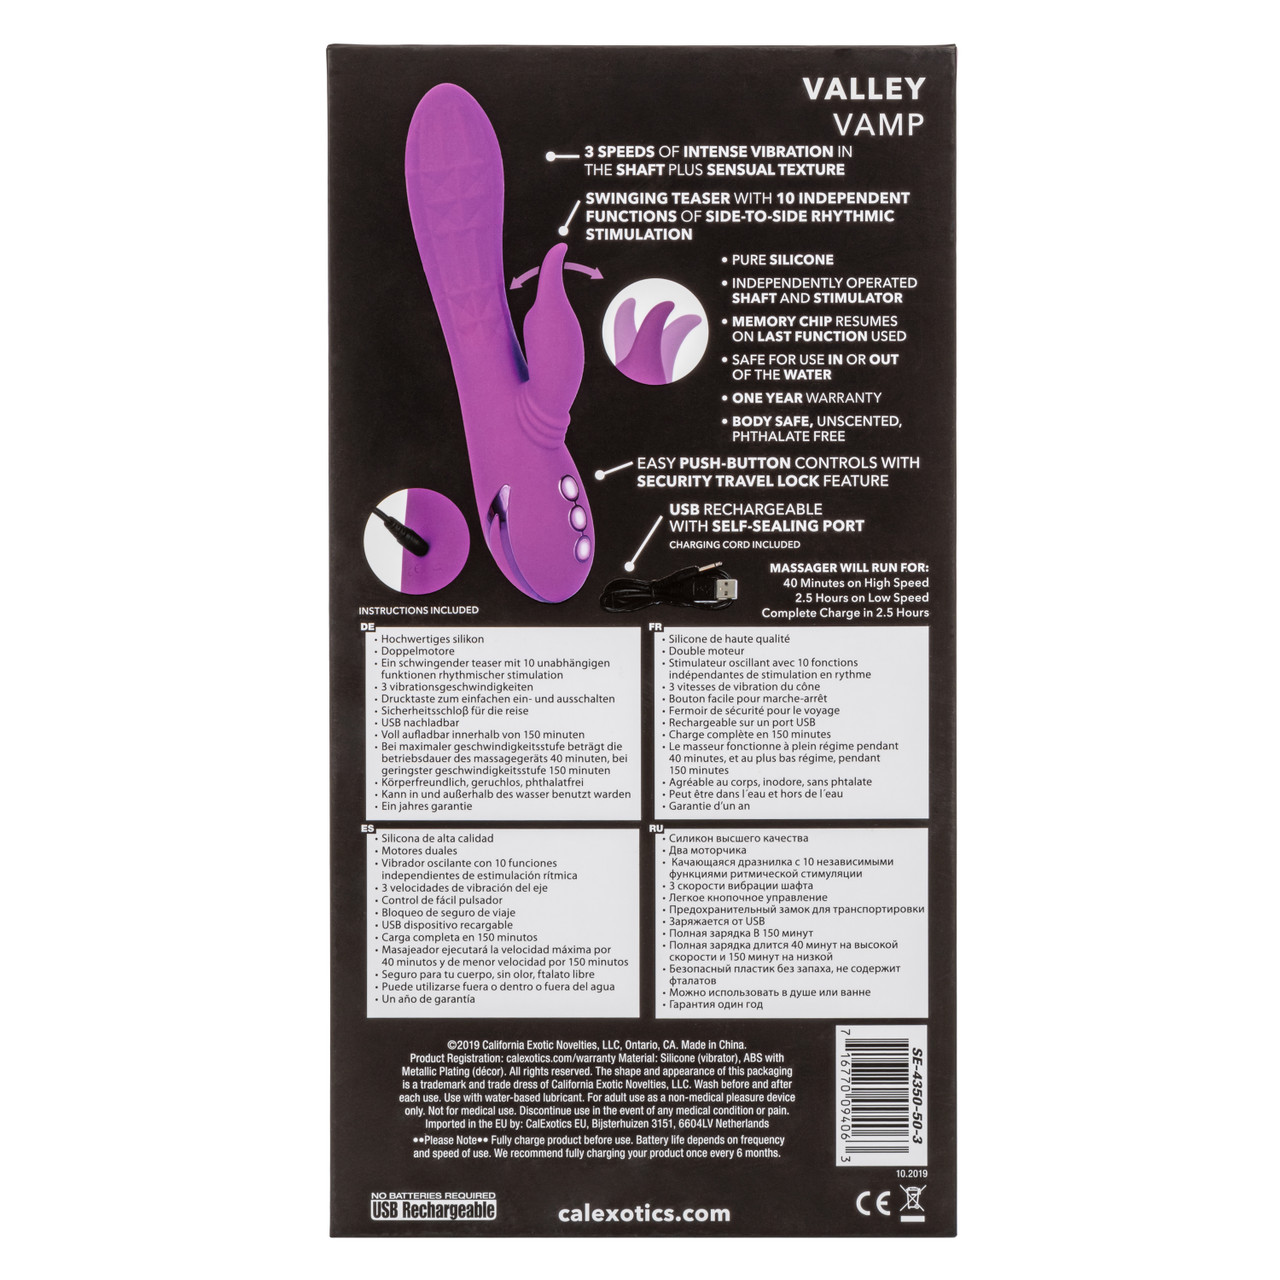 Вибратор-кролик с подвижным отростком CalExotics California Dreaming Valley Vamp, фиолетовый